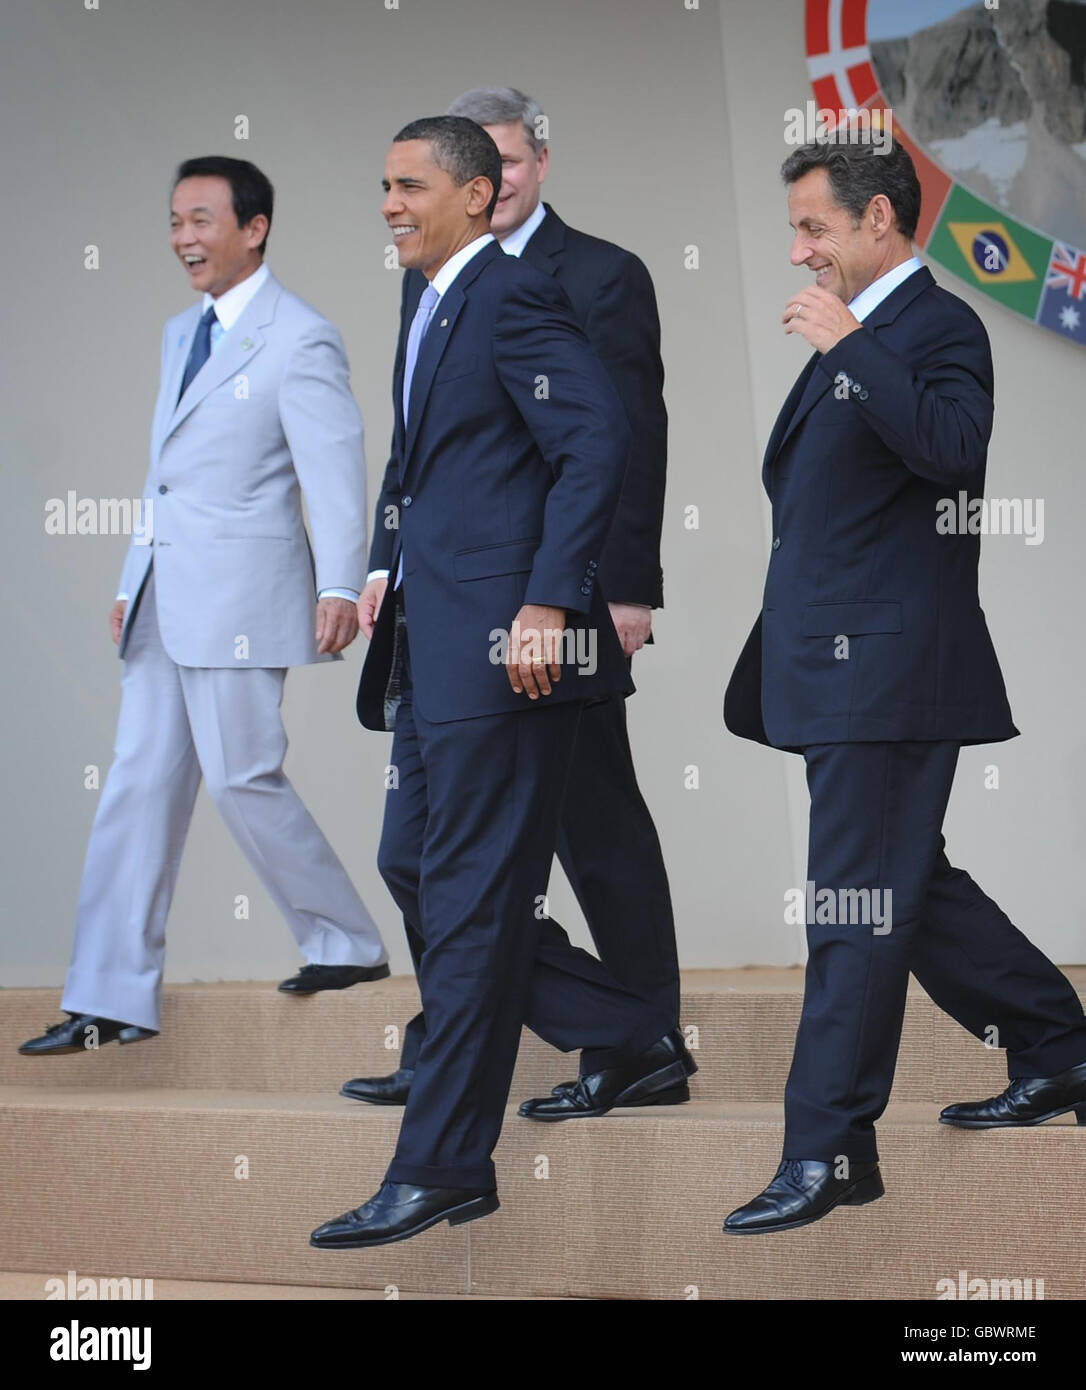 G8-Führer verlassen die Bühne, nachdem sie für ihr Familienfoto posiert haben (von links nach rechts).der japanische Premierminister Taro Aso, der US-Präsident Barack Obama, der kanadische Premierminister Stephen Harper, der französische Präsident Nicolas Sarkozy beim G8-Gipfel in L'Aquila heute. Stockfoto